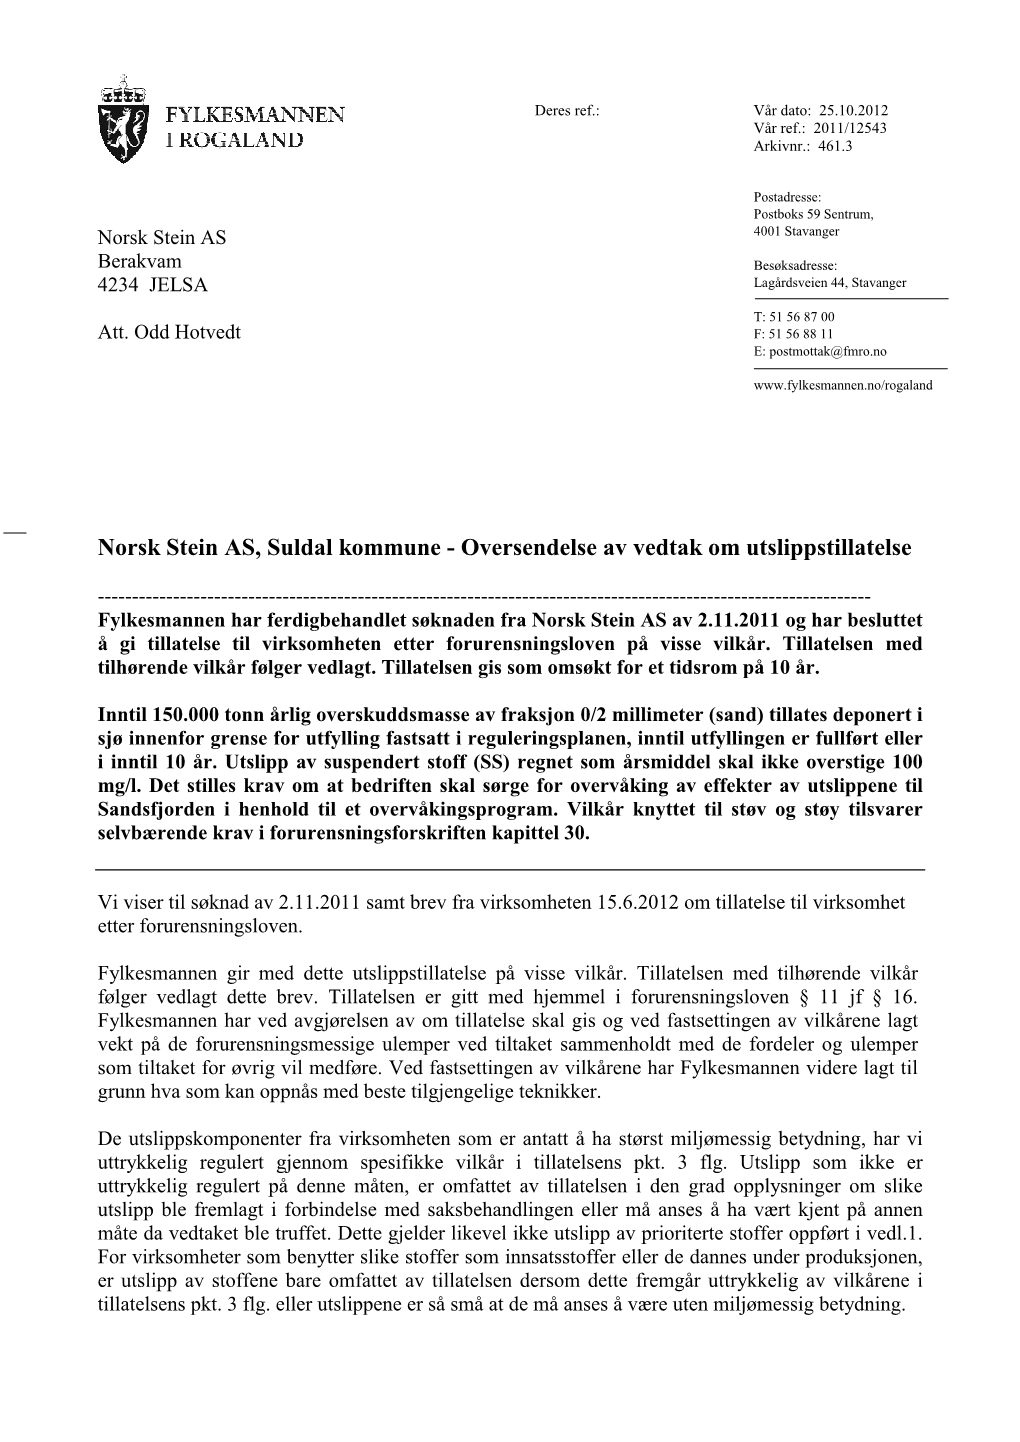 Norsk Stein AS, Suldal Kommune - Oversendelse Av Vedtak Om Utslippstillatelse